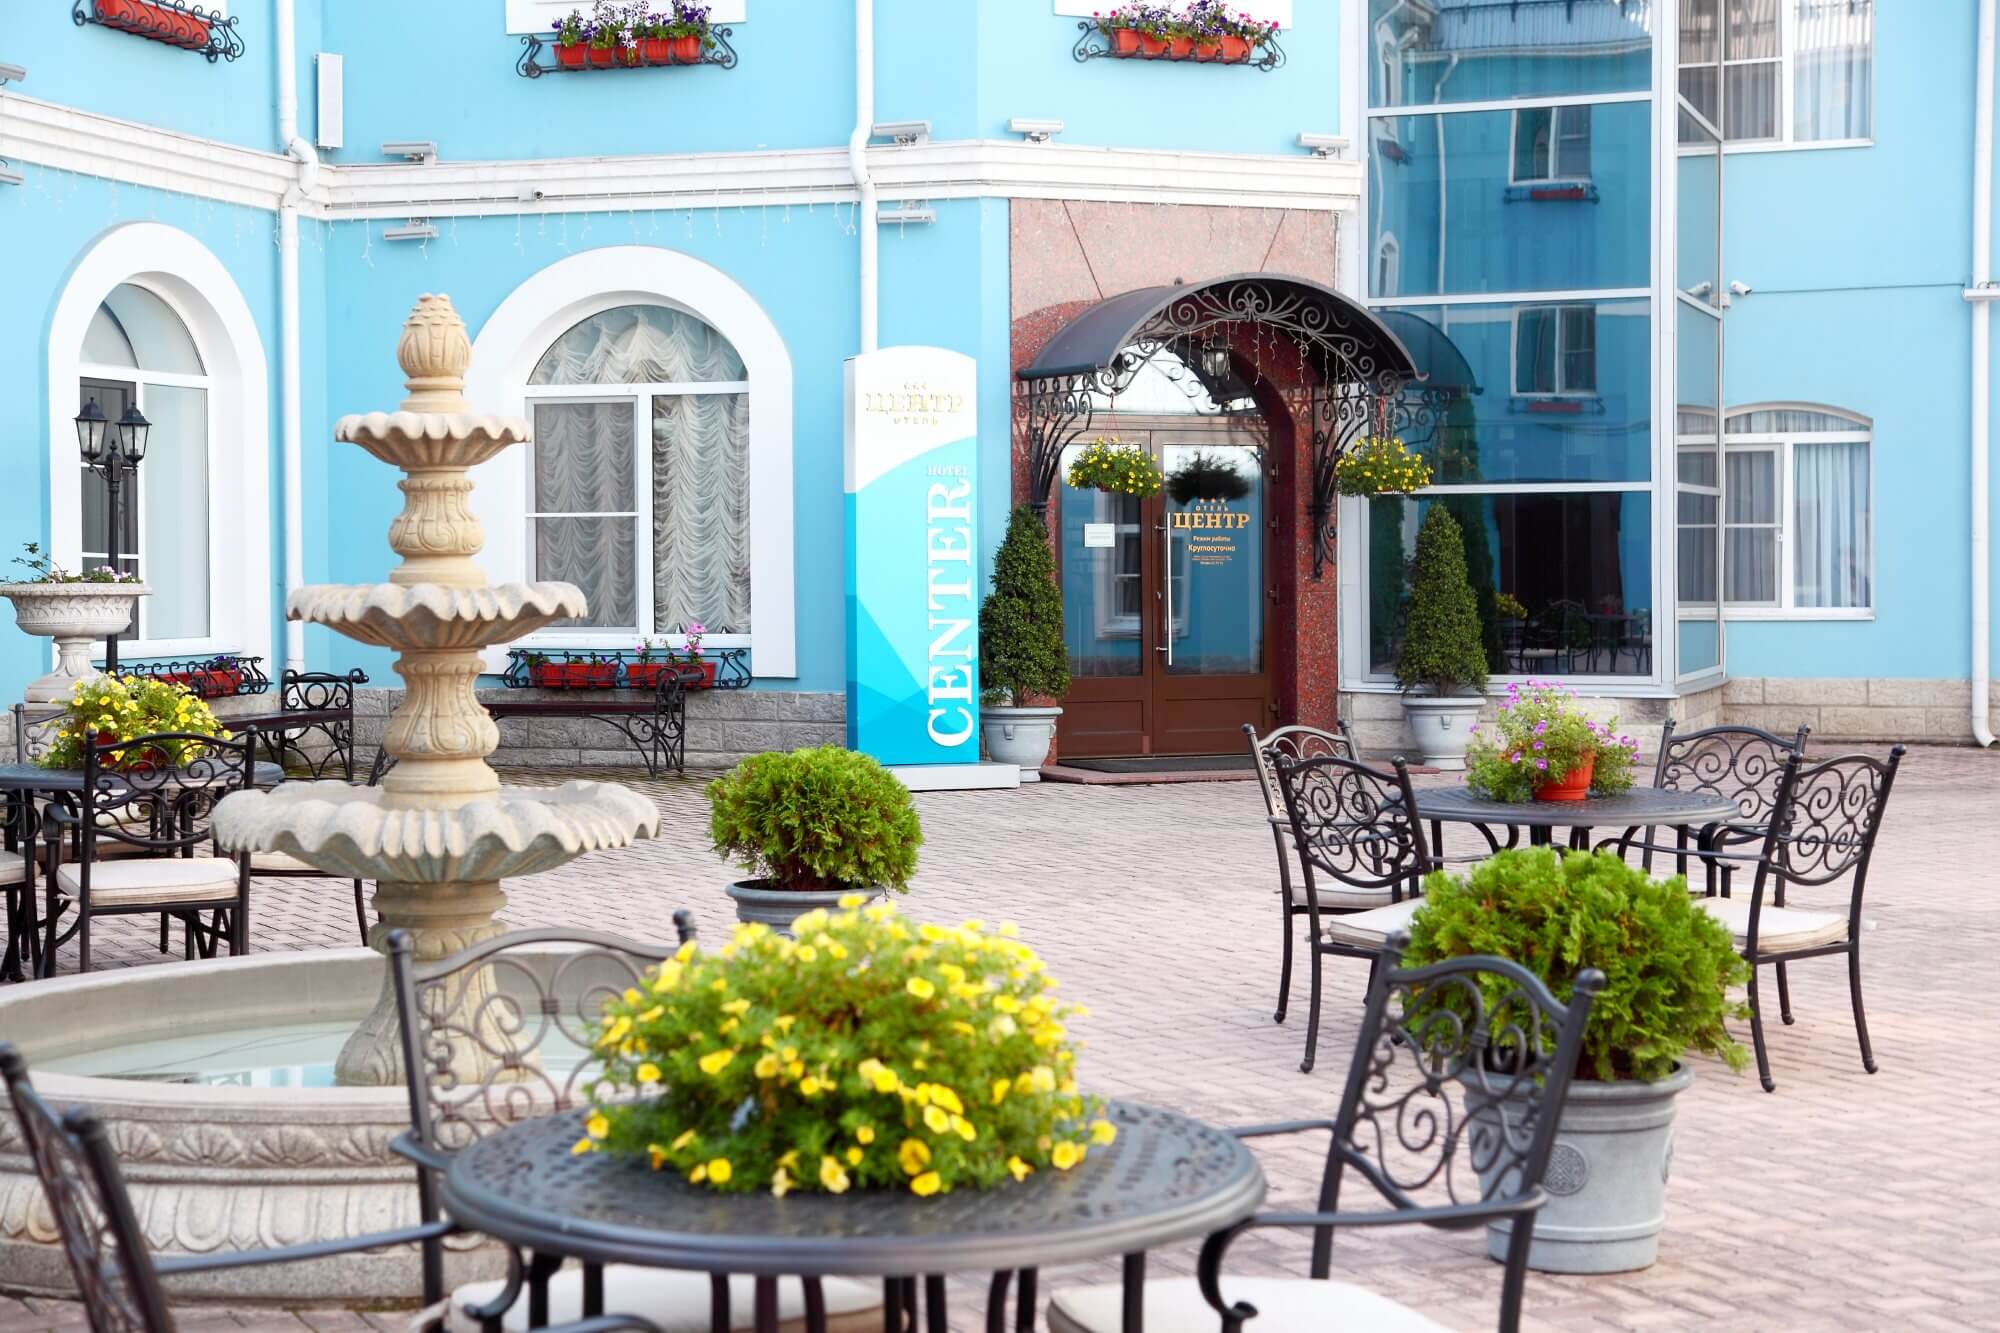 Внутренний двор: столики кафе и фонтан. Фасад здания - голубого цвета.